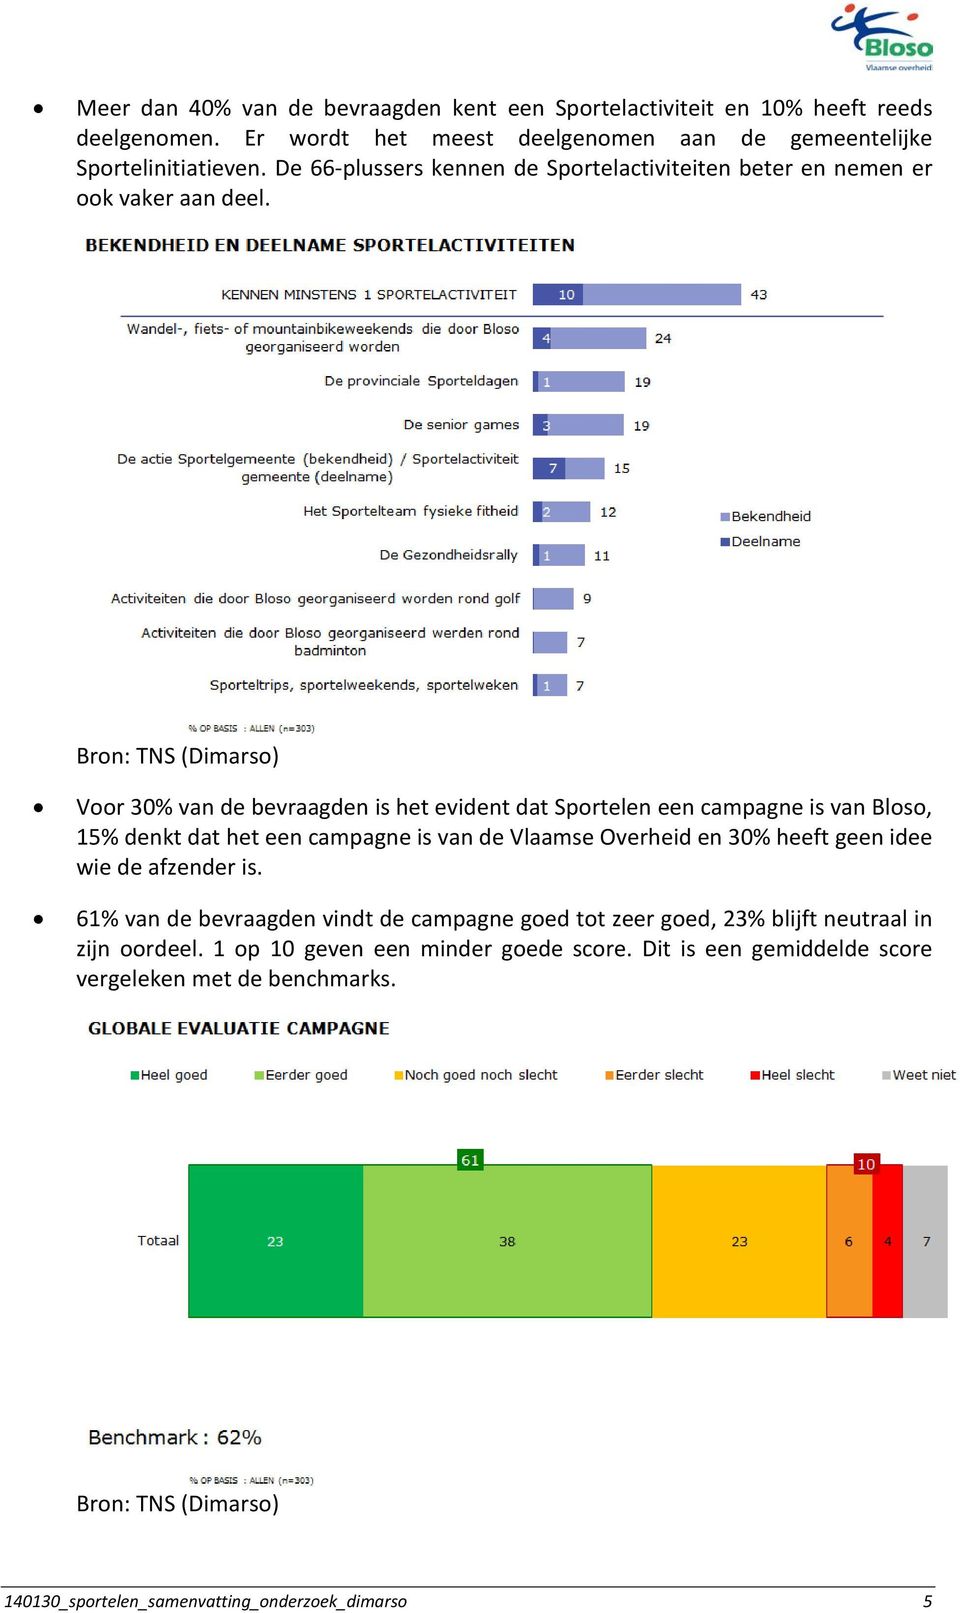 Voor 30% van de bevraagden is het evident dat Sportelen een campagne is van Bloso, 15% denkt dat het een campagne is van de Vlaamse Overheid en 30% heeft geen idee wie